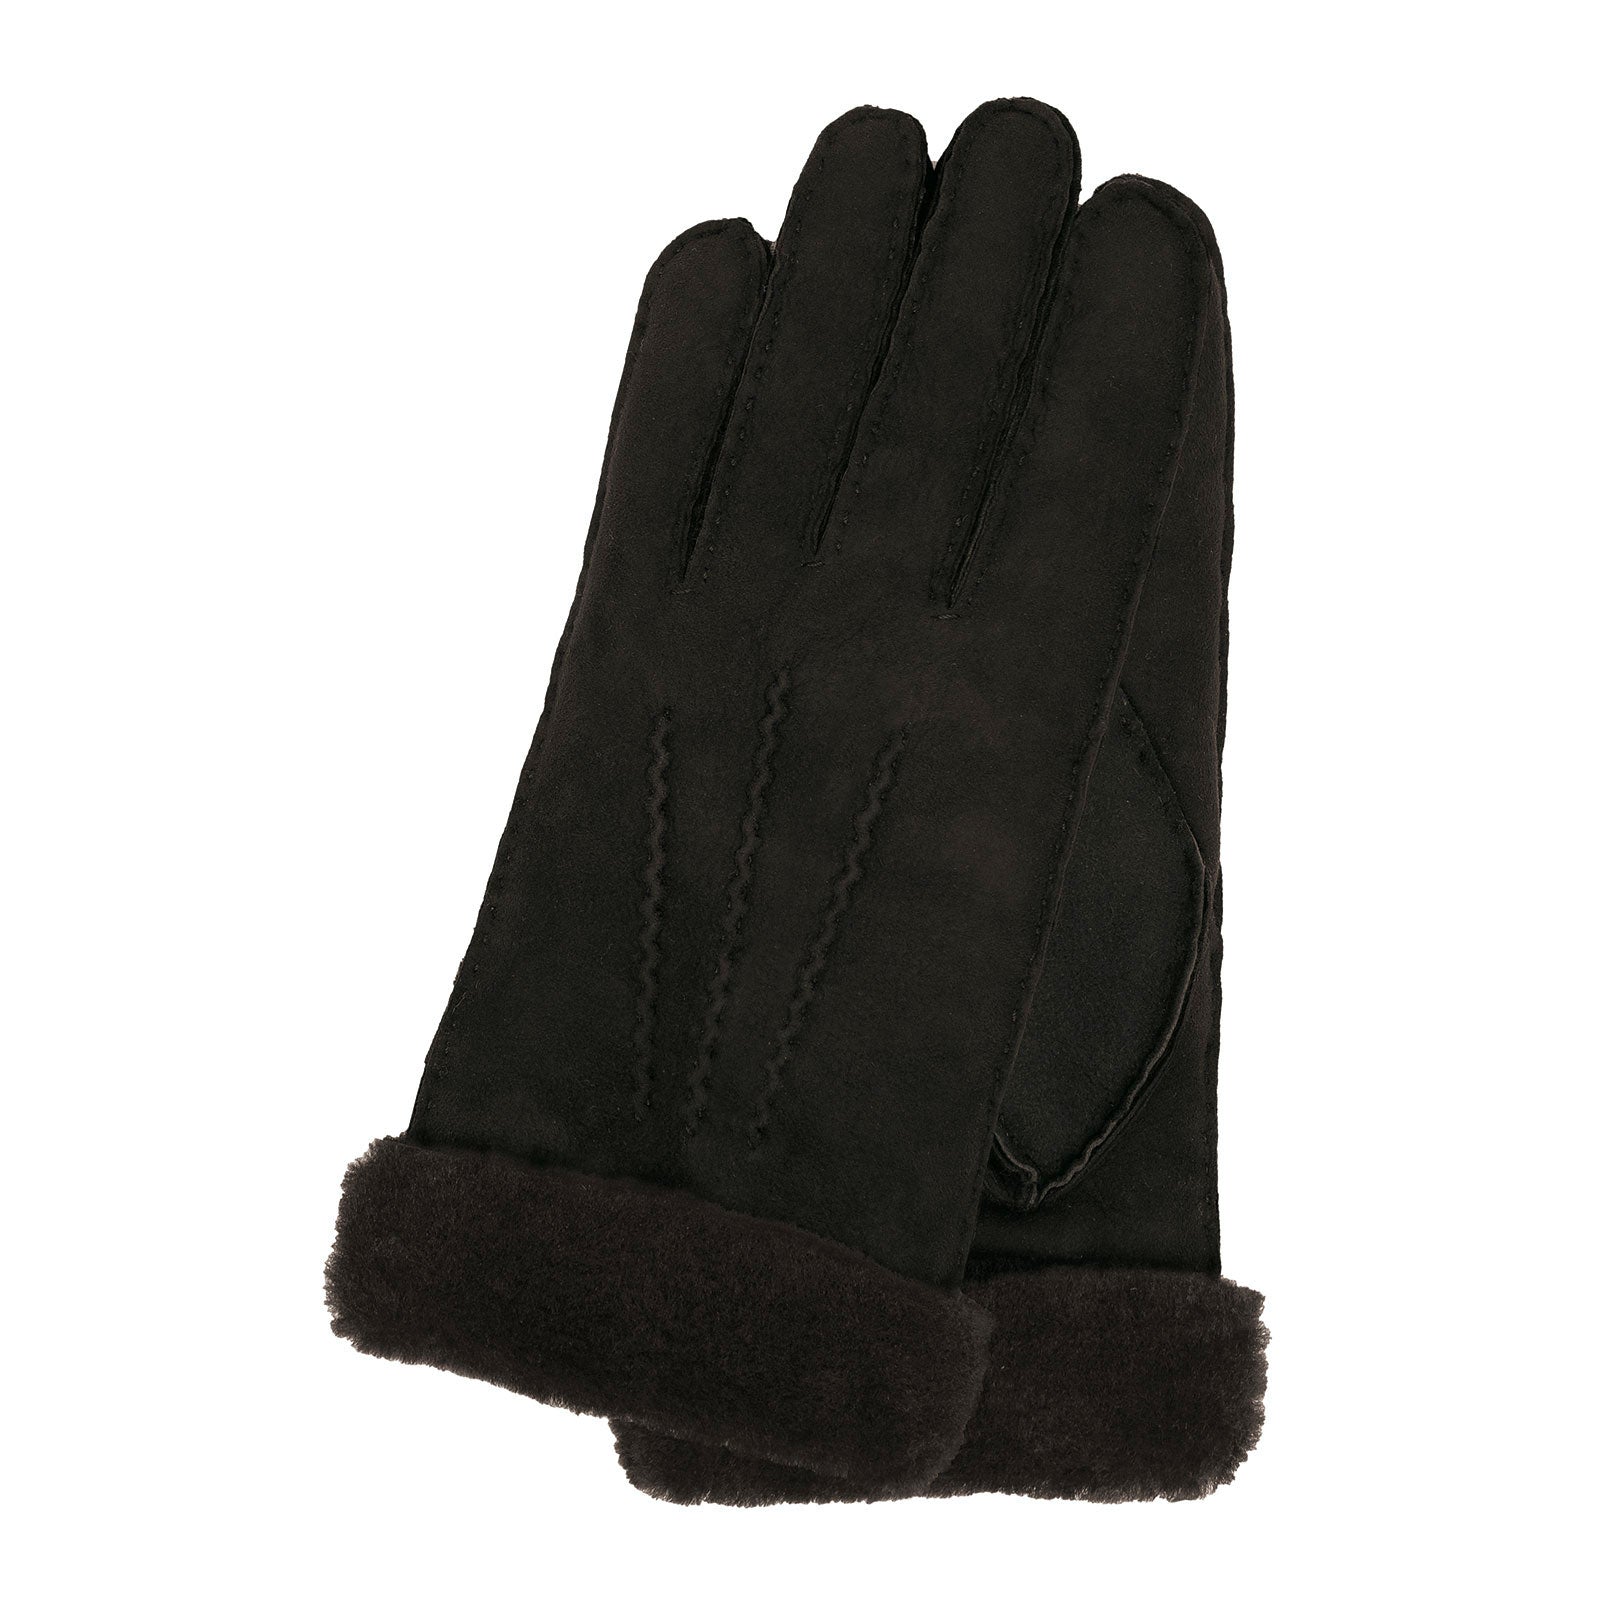 Men's gloves 'Mats' black